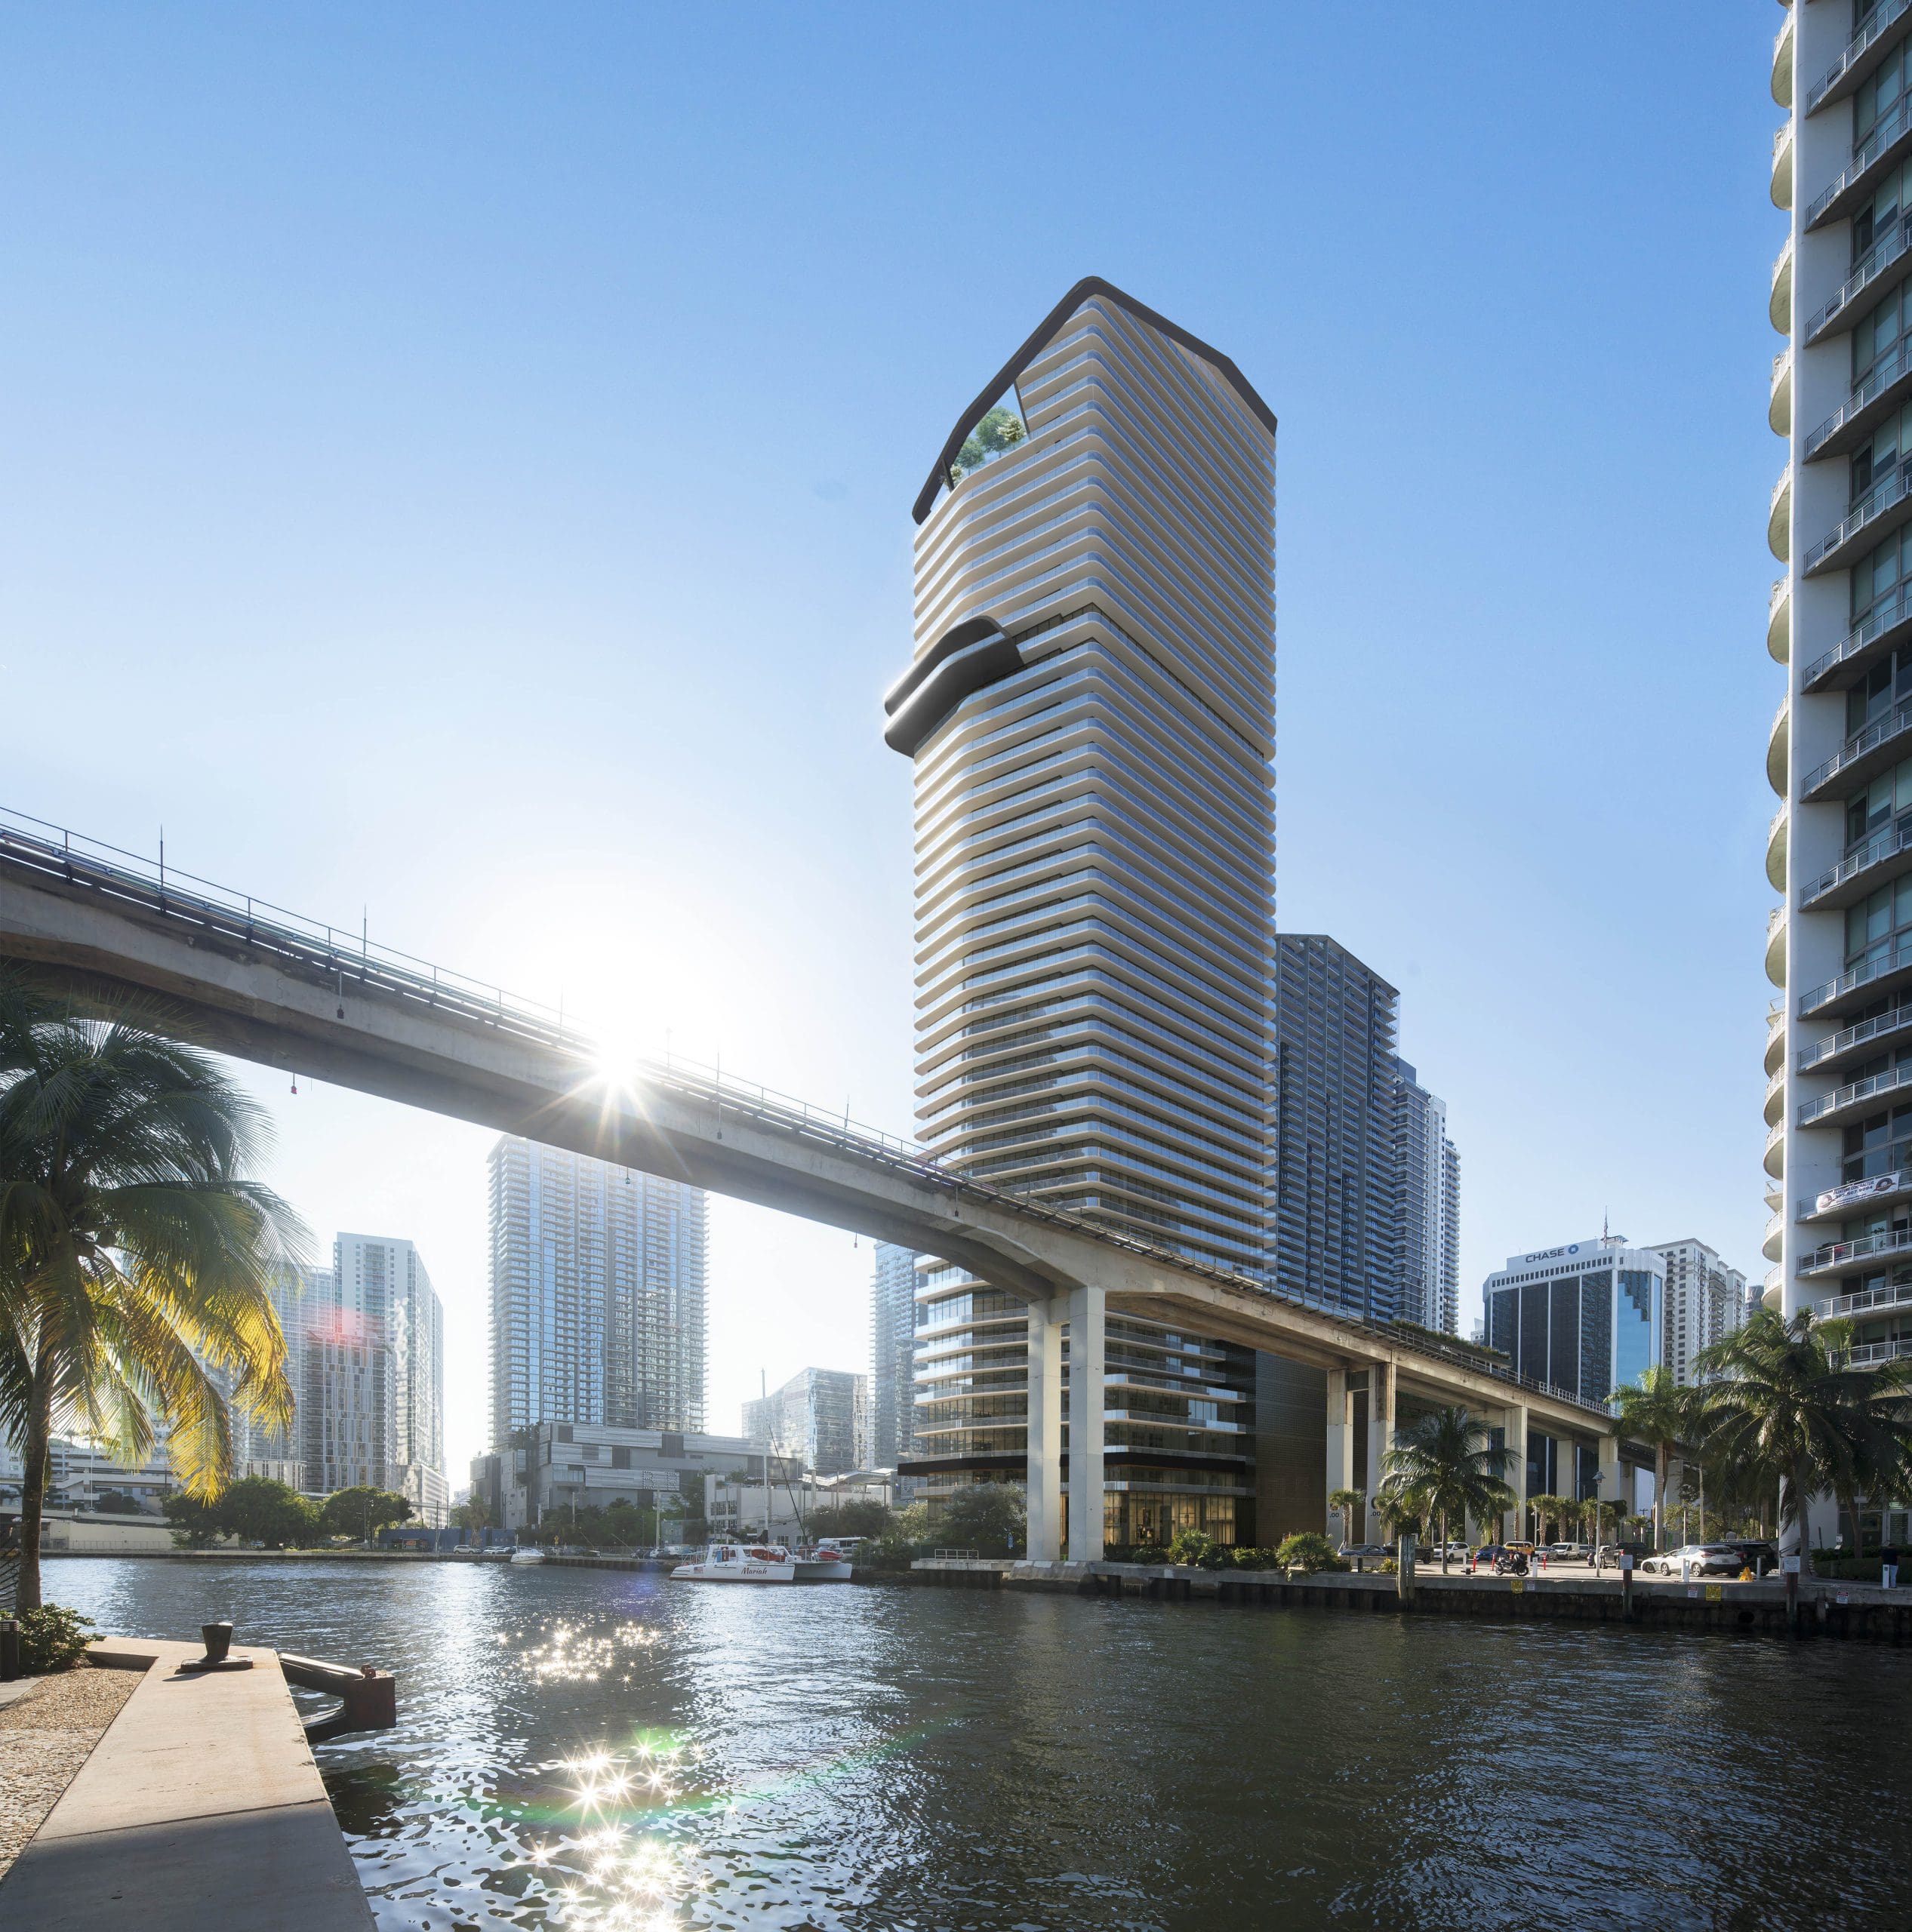 Pablo Sandoval Buys Two Miami Condos for $2 Million